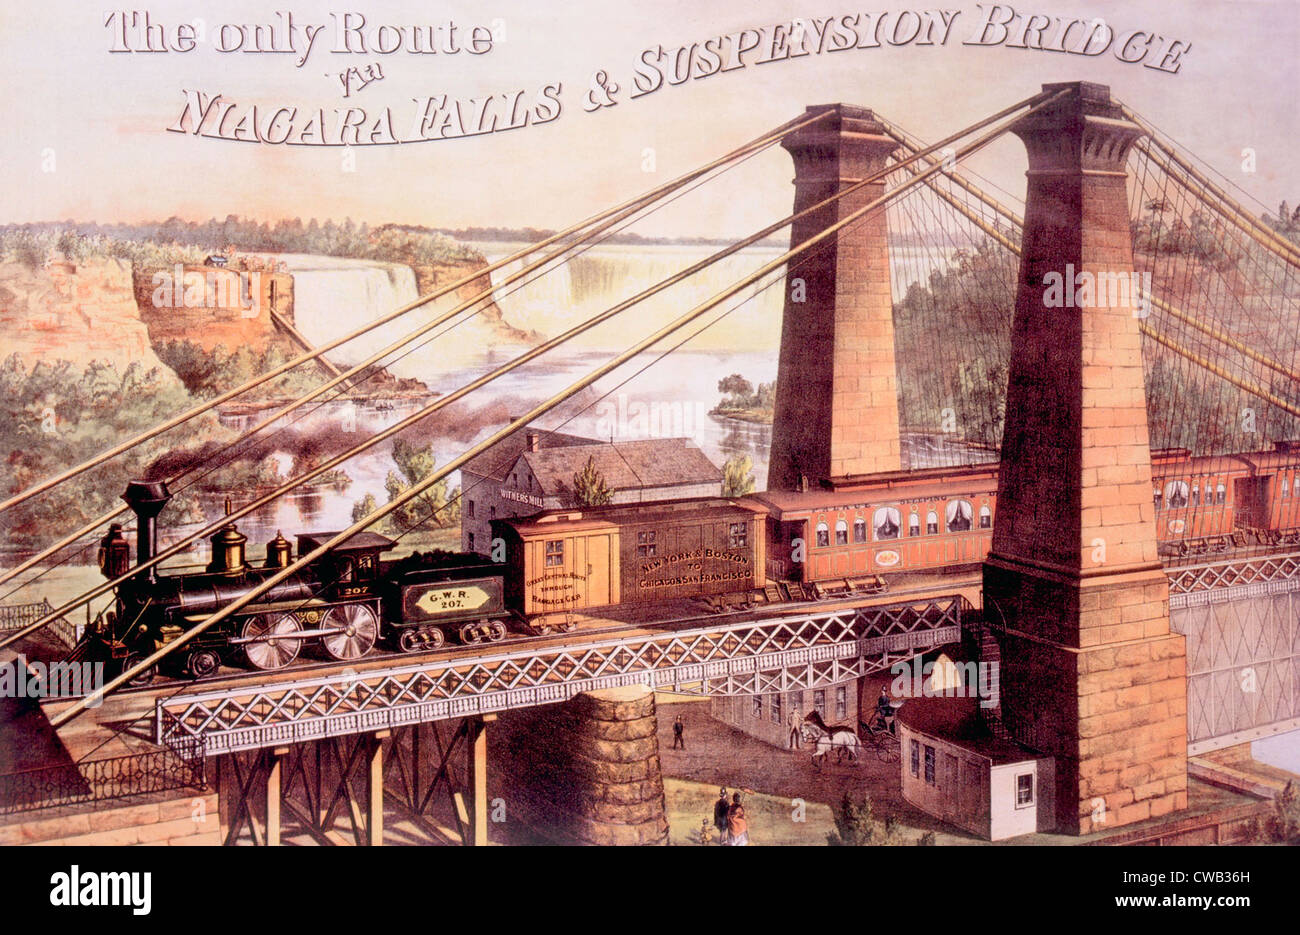 Puente de suspensión de las Cataratas del Niágara, litografía por la arcilla, Cosack & Co., 1876 Foto de stock